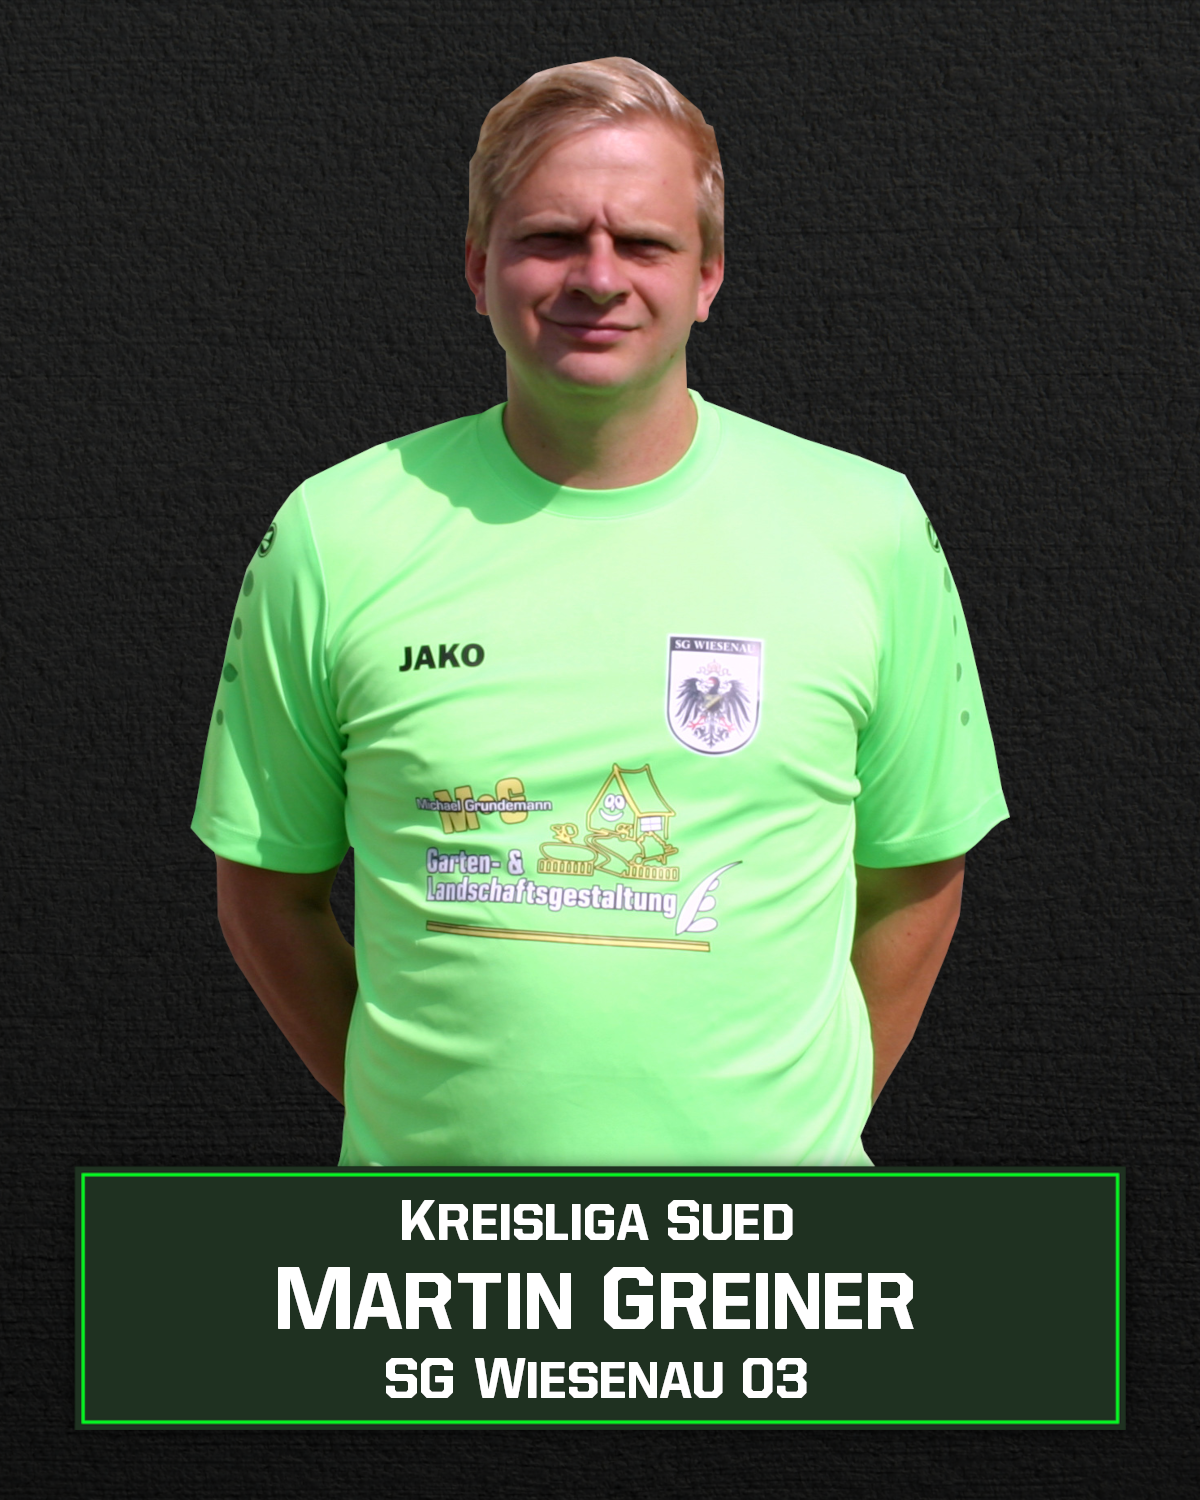 Martin Greiner